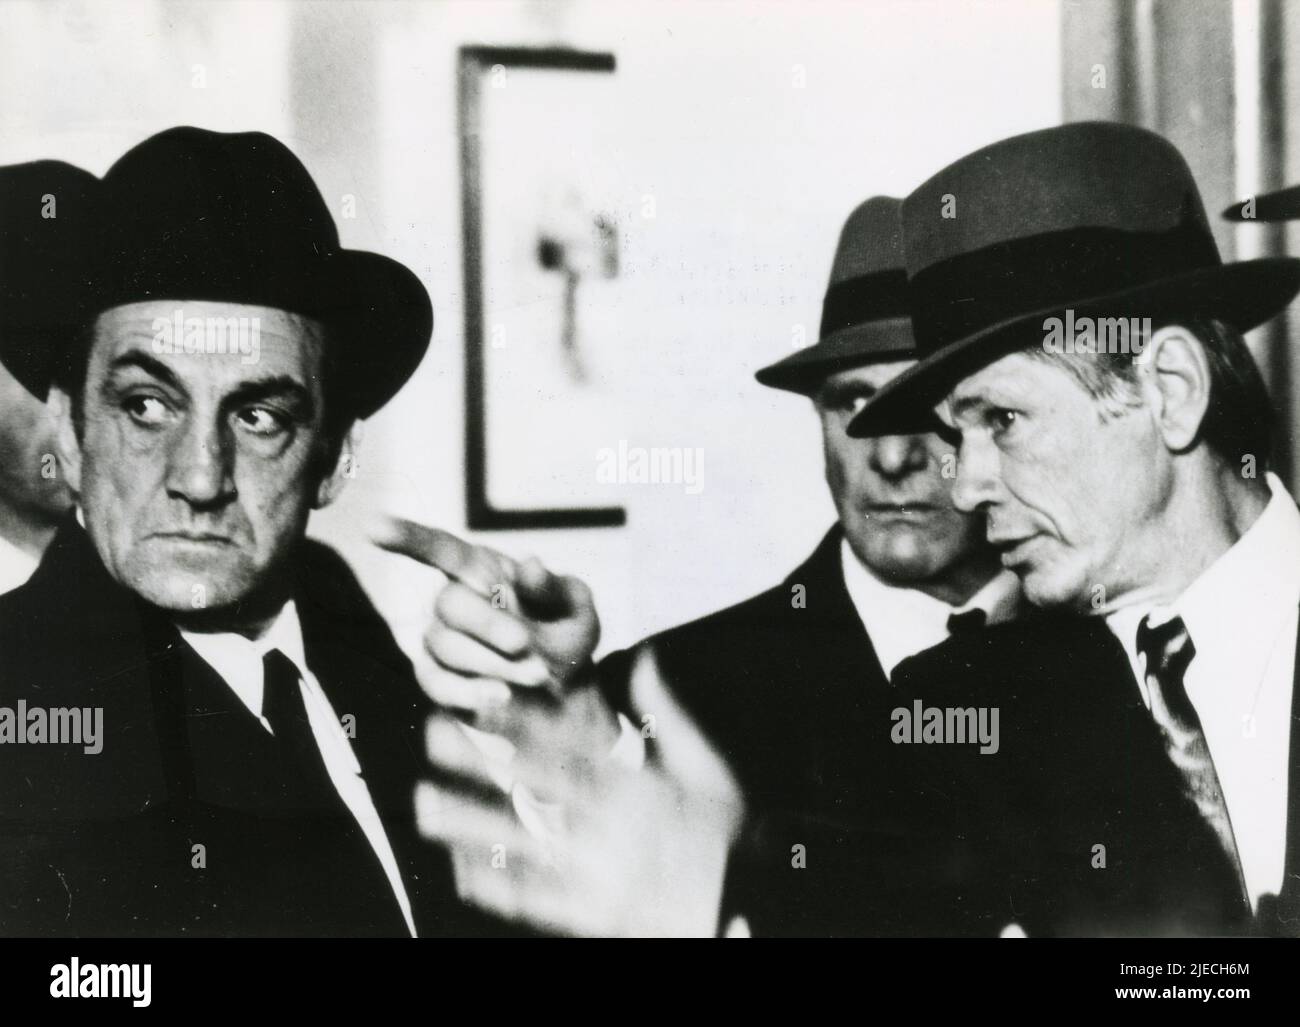 El actor italiano Lino Ventura y el actor estadounidense Charles Bronson en la película The Valachi Papers, F/I 1972 Foto de stock